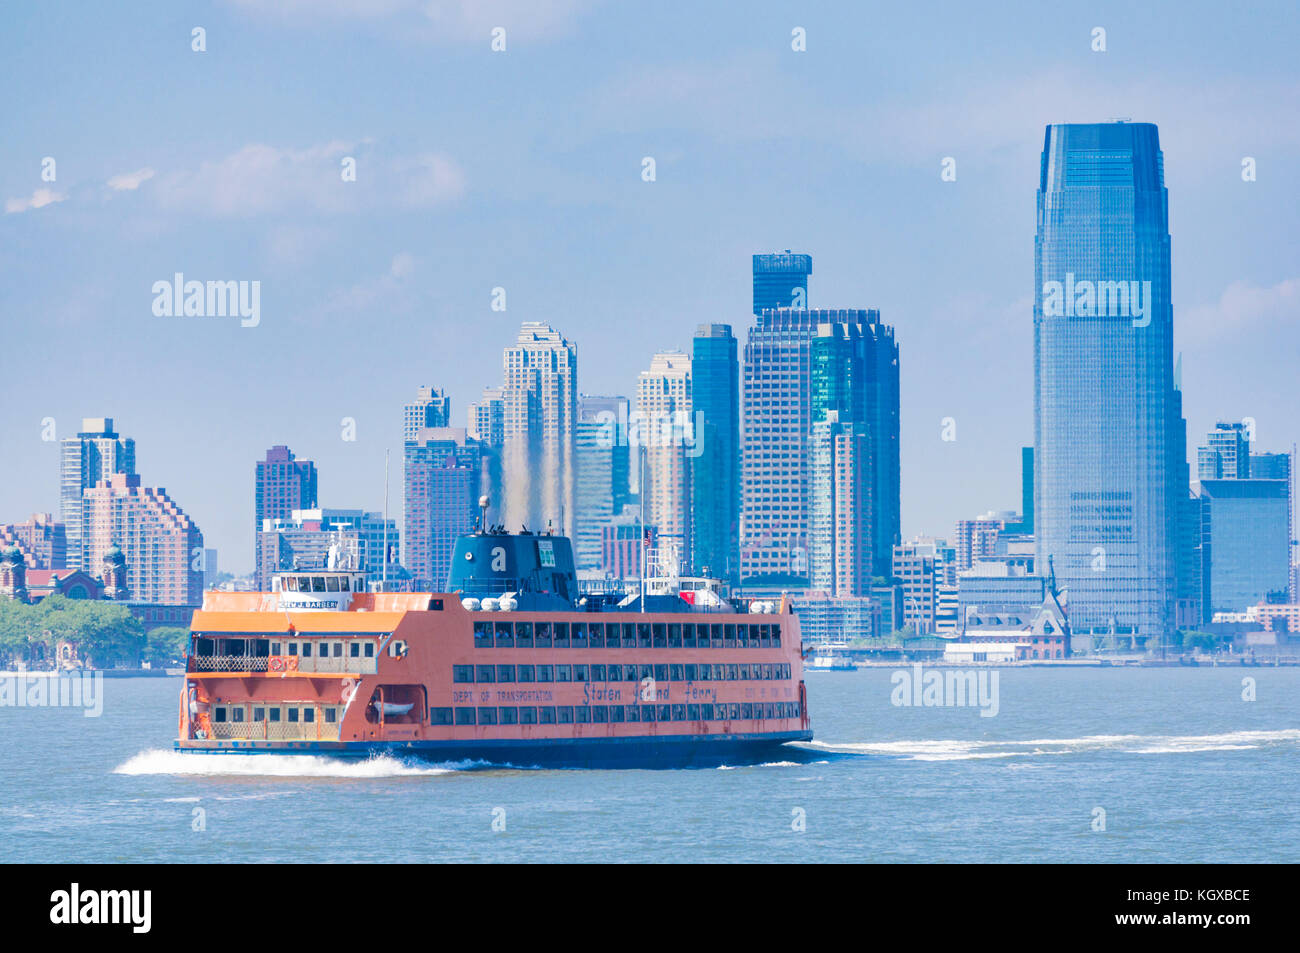 La Staten Island Ferry con skyline di New York City usa new york skyline skyline di manhattan con grattacieli di Manhattan island cbd new york stati uniti d'America Foto Stock